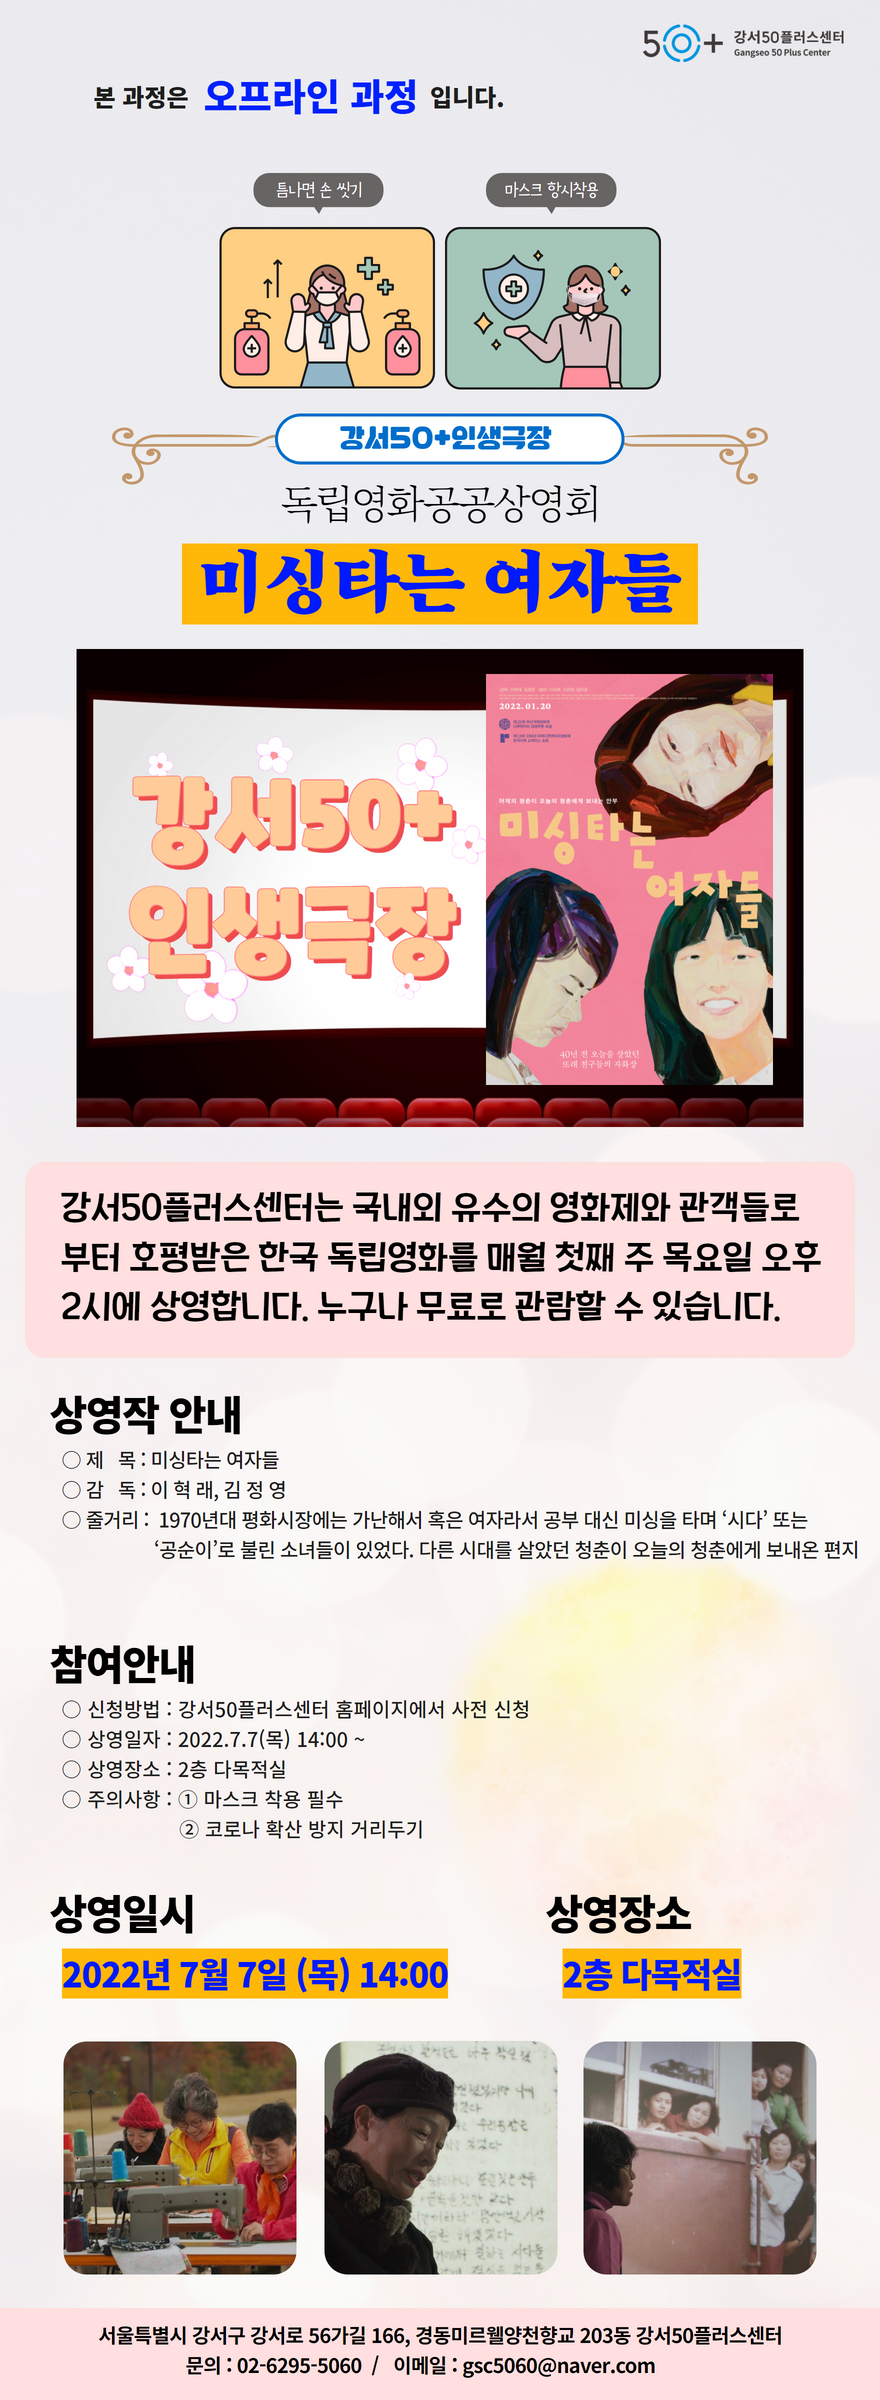 강서인생극장+_+미싱타는+여자들+(1).png